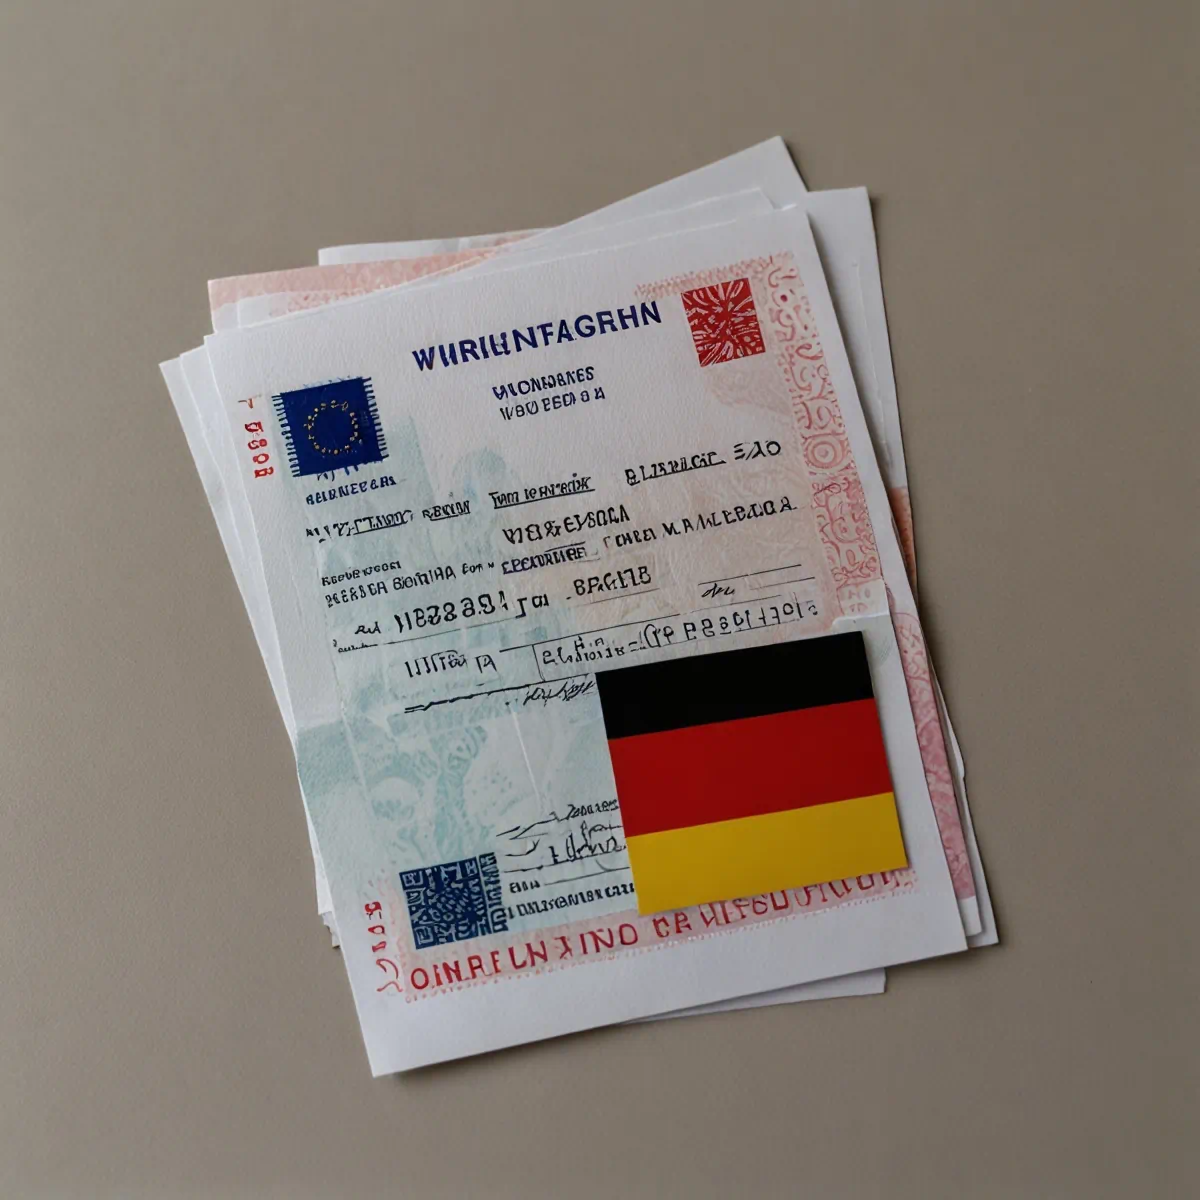 بهترین راه دریافت ویزا برای زایمان در آلمان